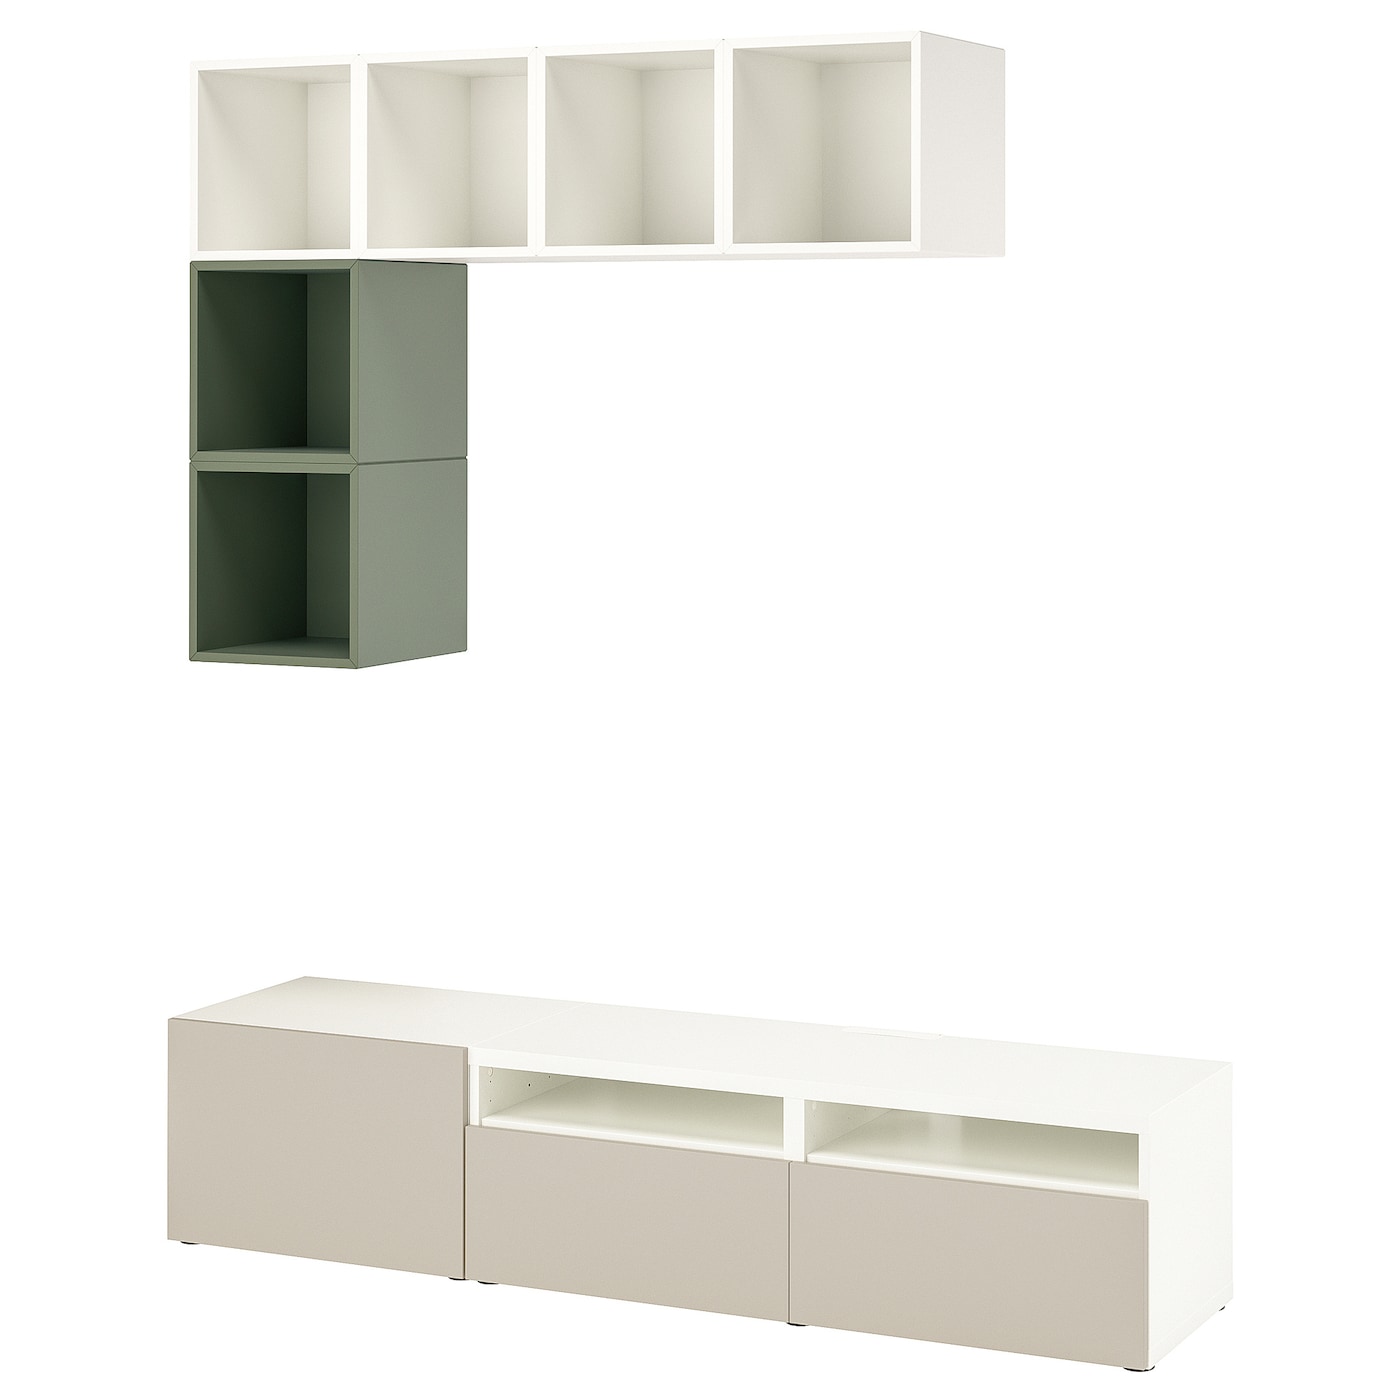 Комплект мебели д/гостиной  - IKEA BESTÅ/BESTA EKET, 180x42x170см, белый/светло-зеленый, БЕСТО ЭКЕТ ИКЕА